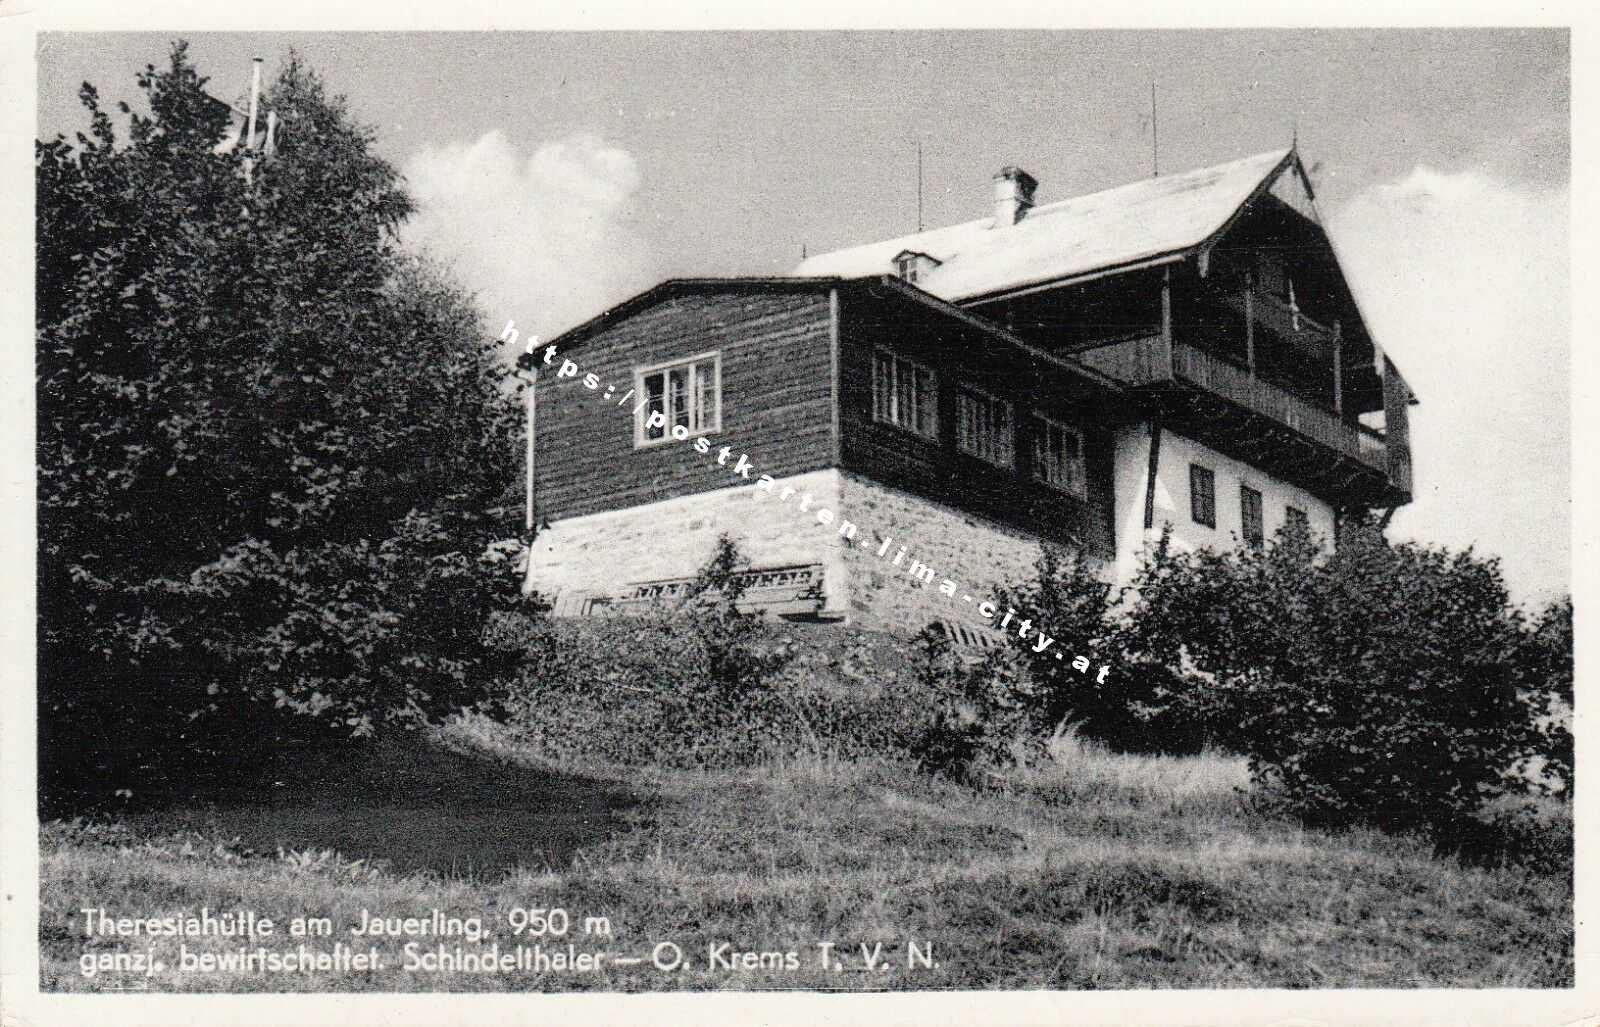 Theresiahütte am Jauerling 